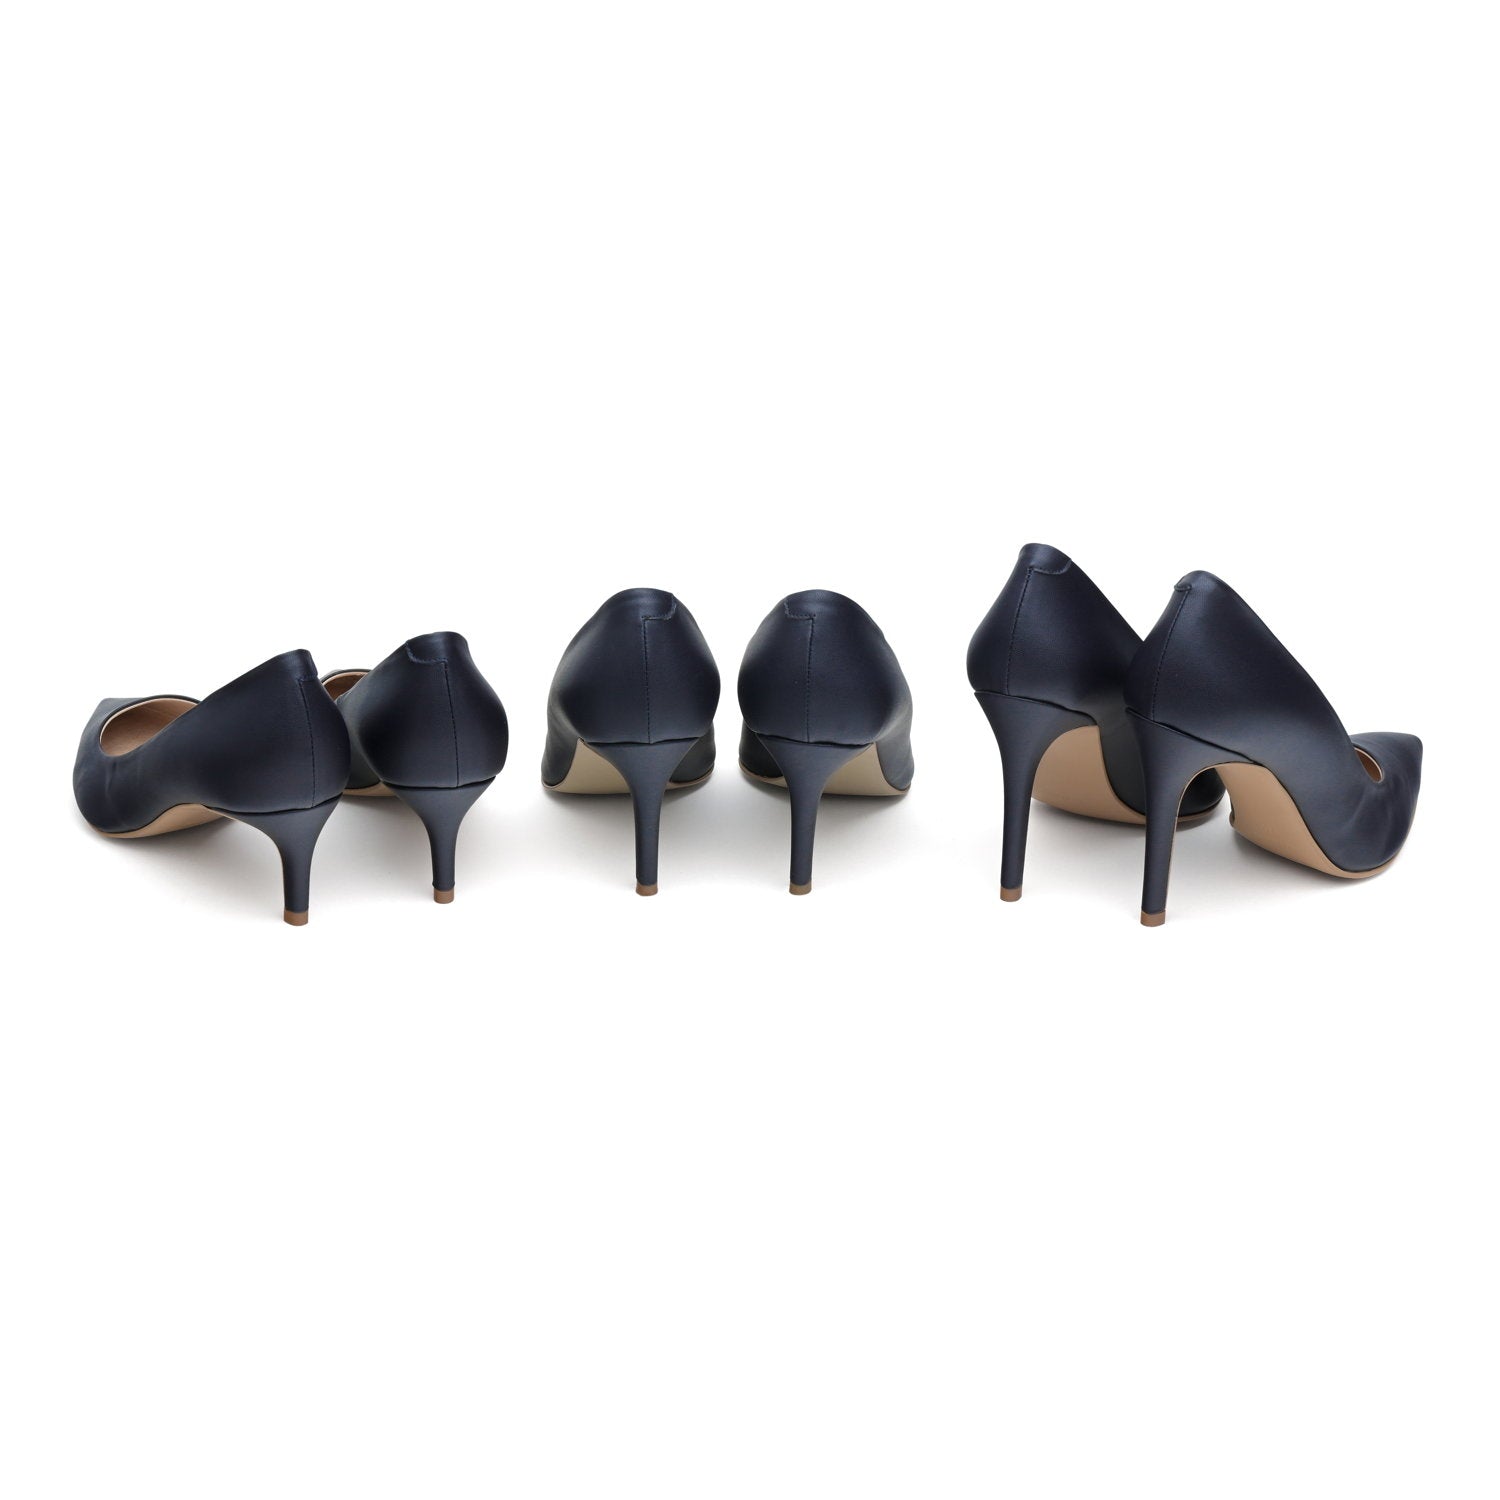 The Blue - vegan 70mm heels